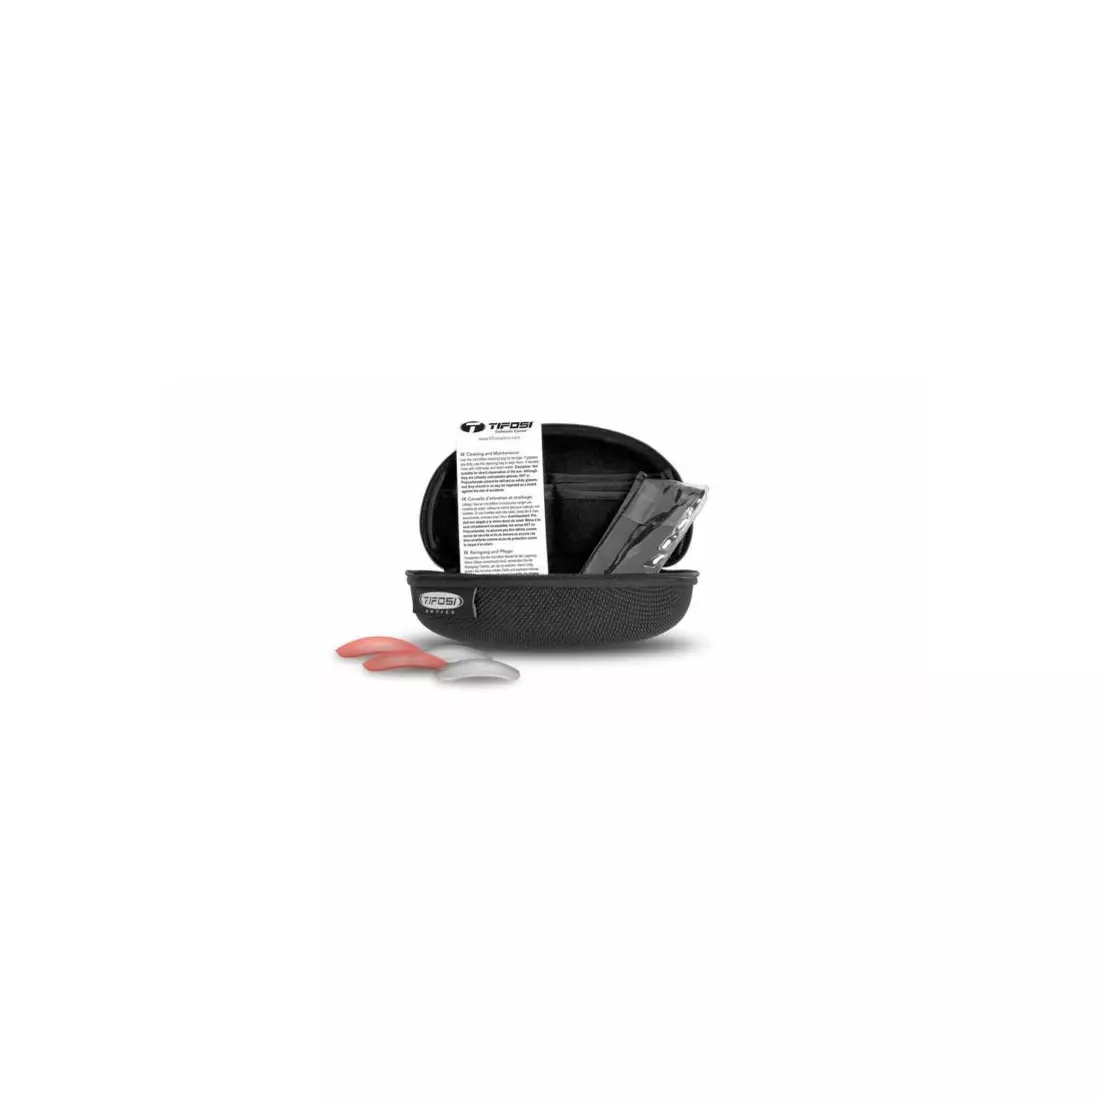 TIFOSI sport szemüveg cserélhető lencsével crit matte black (Smoke, AC Red, Clear) TFI-1340100101